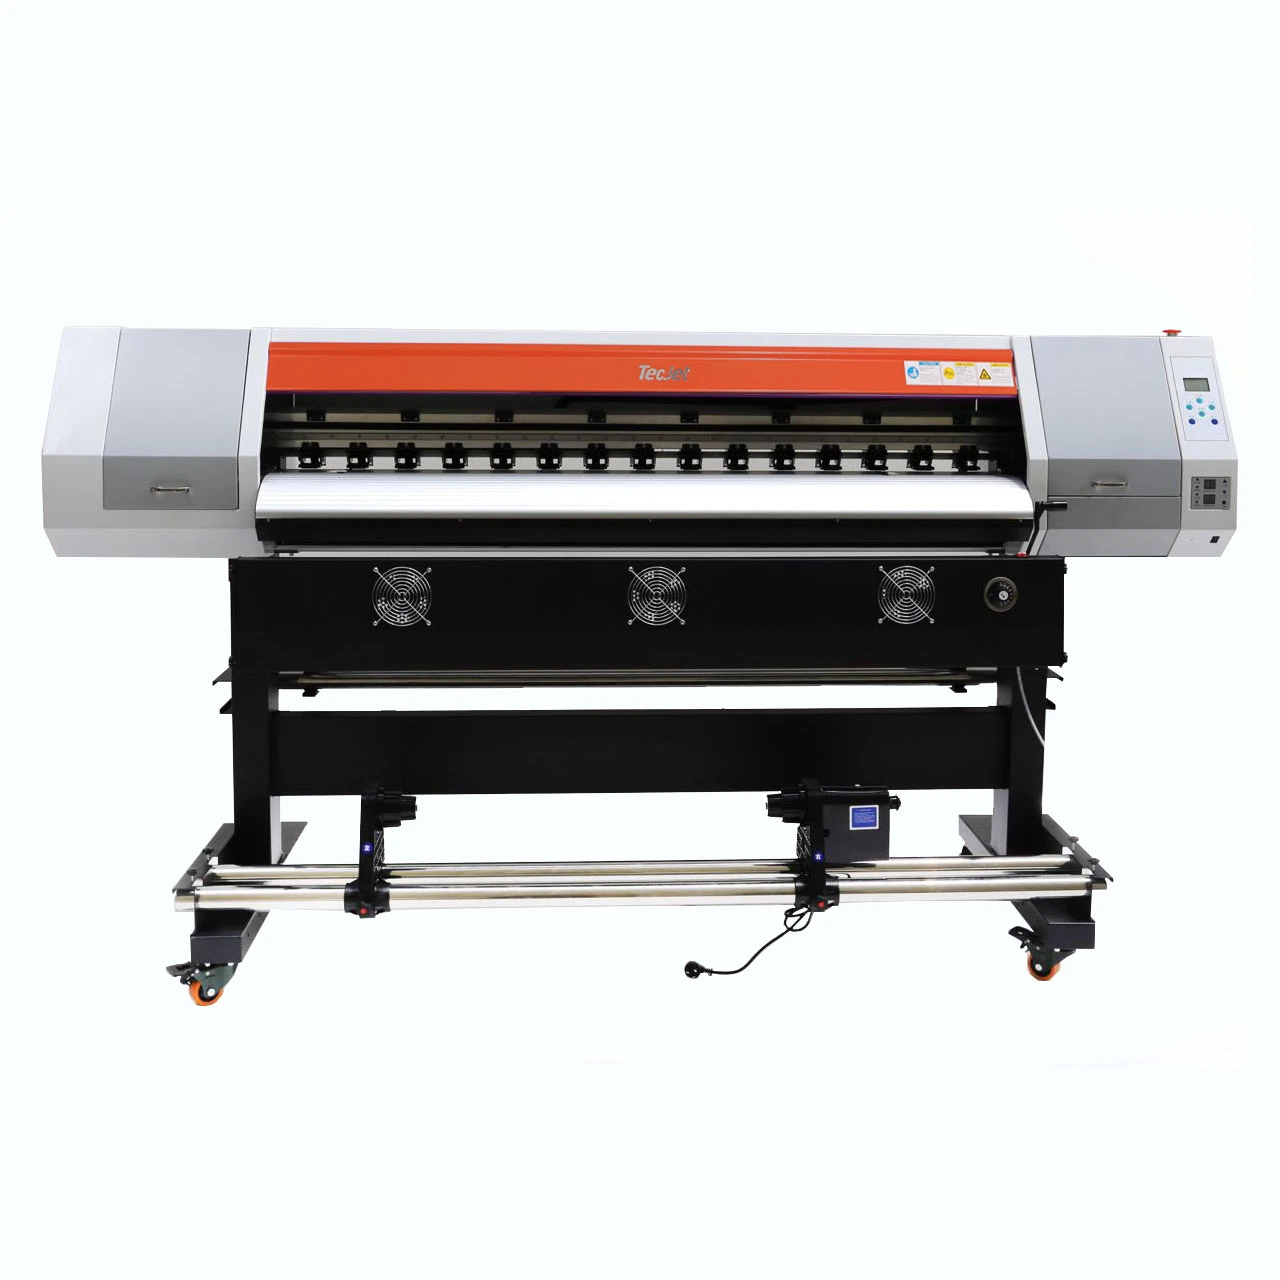 Tecjet Dx5 Dx7 XP600 печатающей головки цифровой струйной печати экологически чистых растворителей машины воды передачи пленки принтер